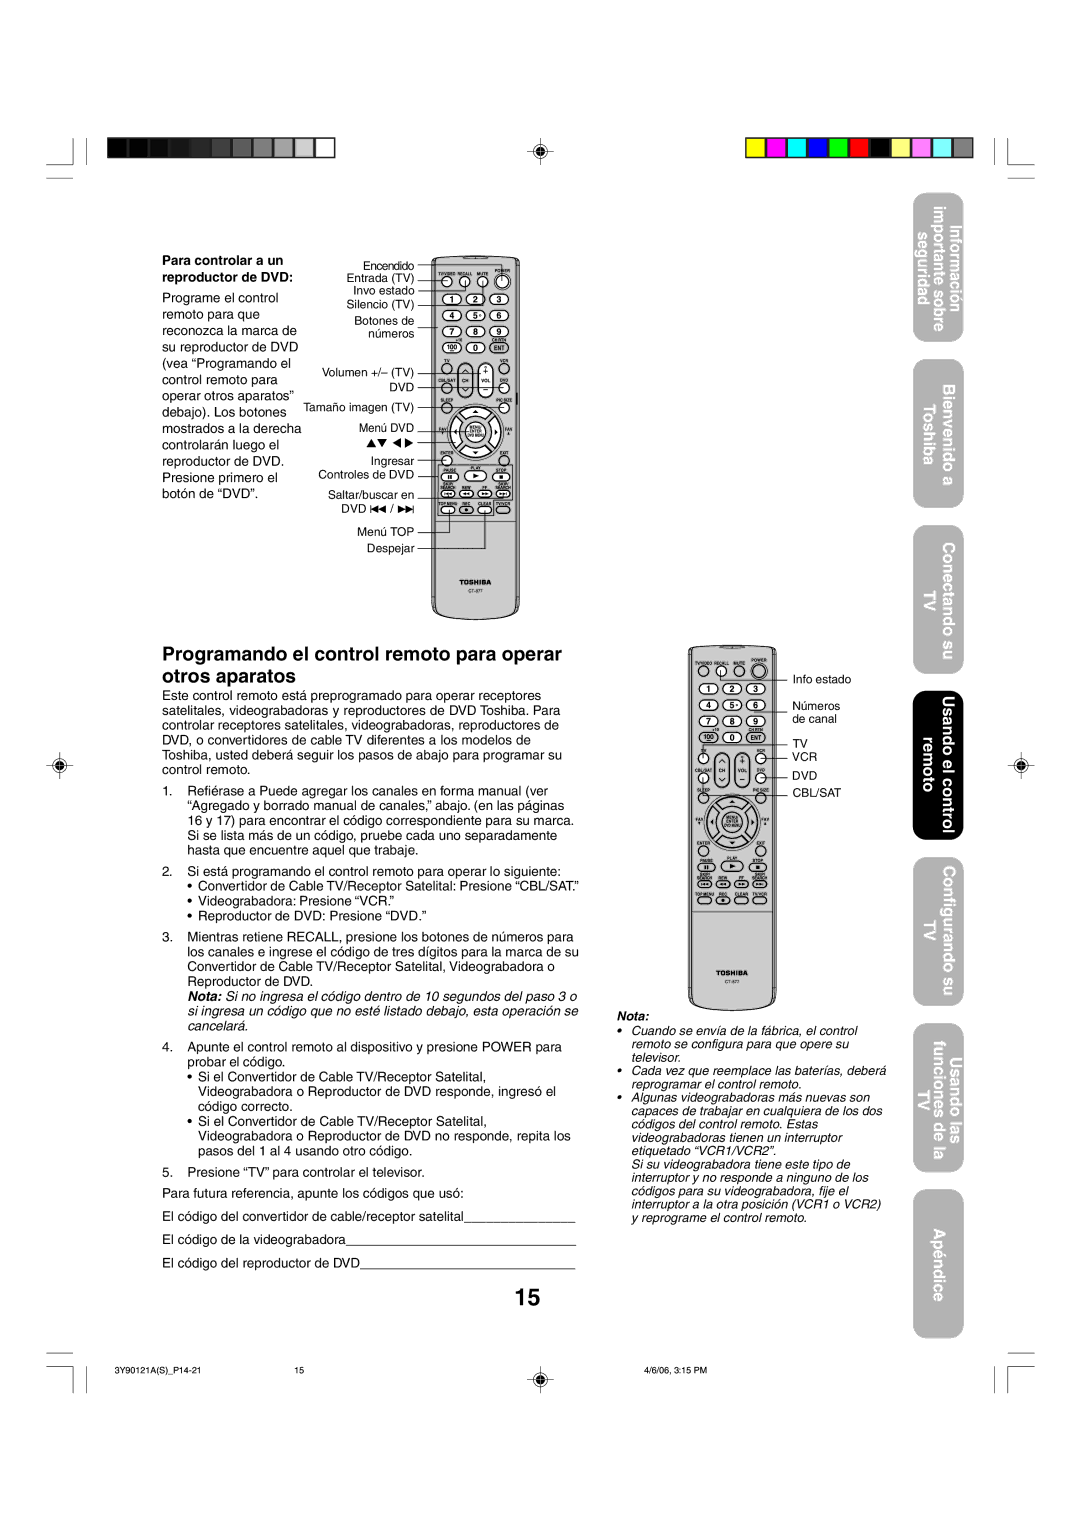 Toshiba 26DF56 appendix Programando el control remoto para operar otros aparatos, Para controlar a un reproductor de DVD 